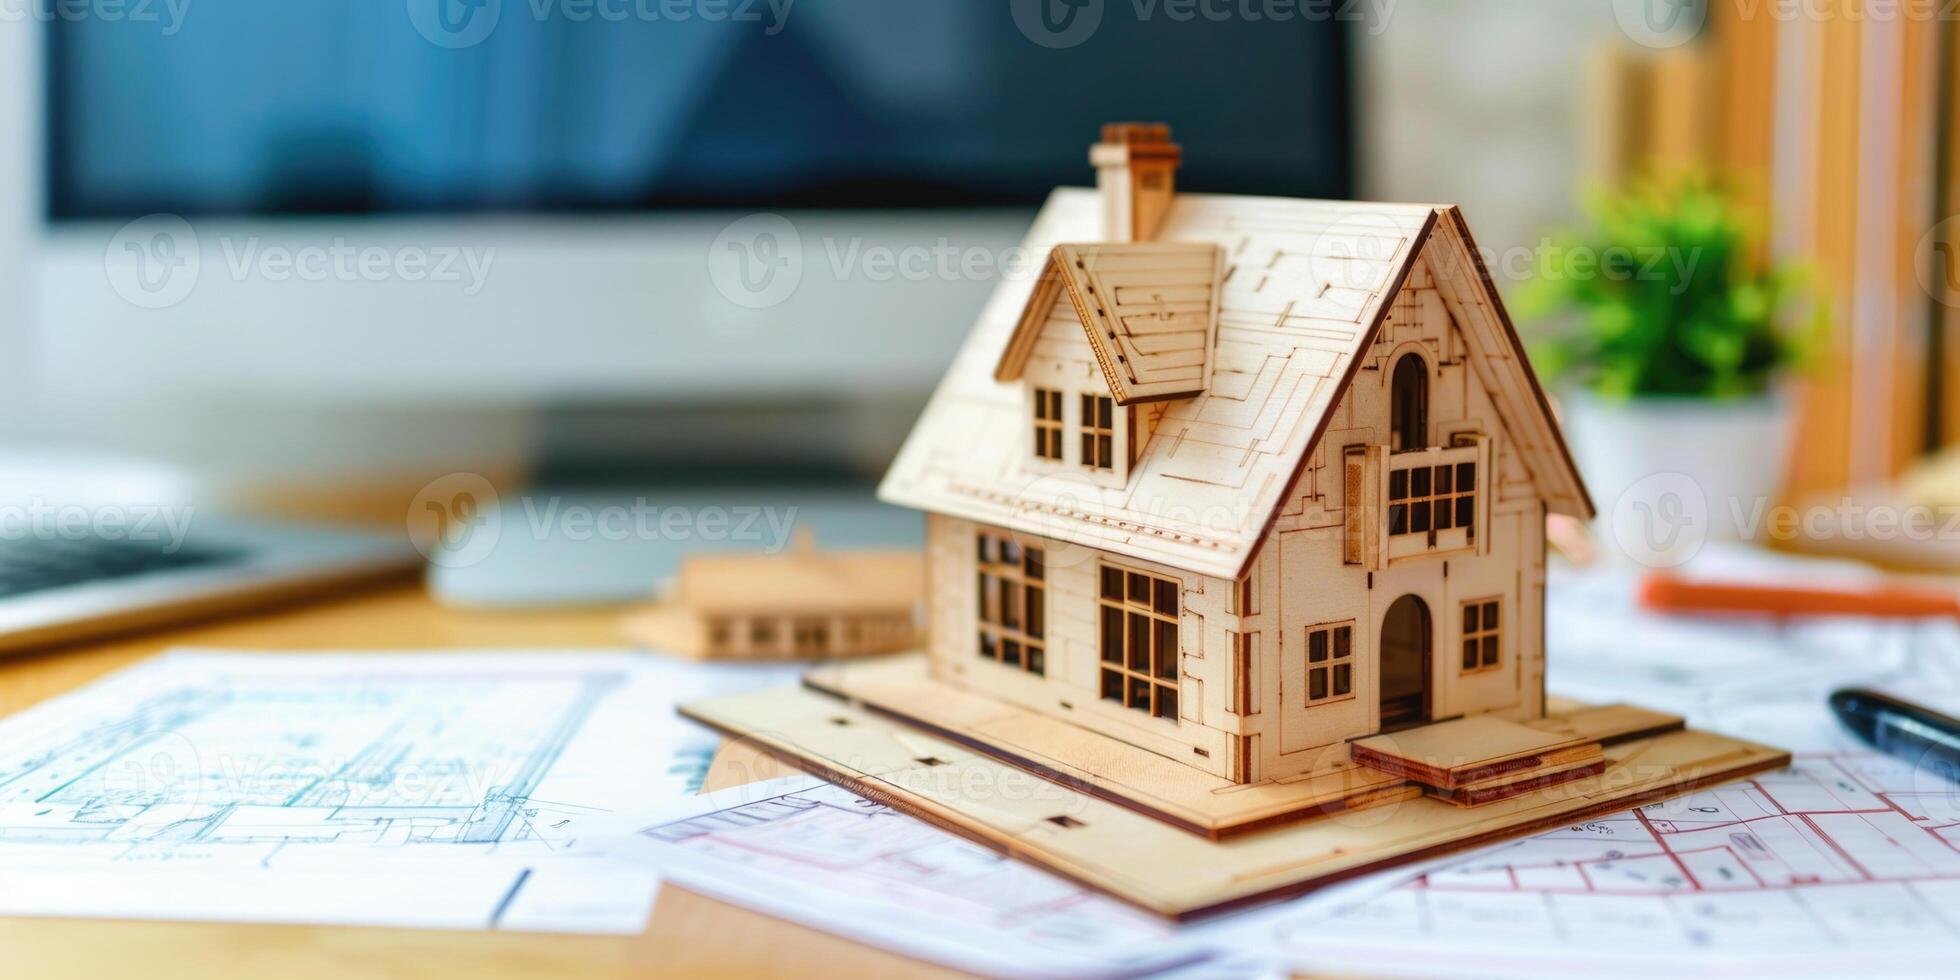 de madera modelo de un casa en un mesa con dibujos y casa disposición. alquiler casa y real inmuebles concepto. foto